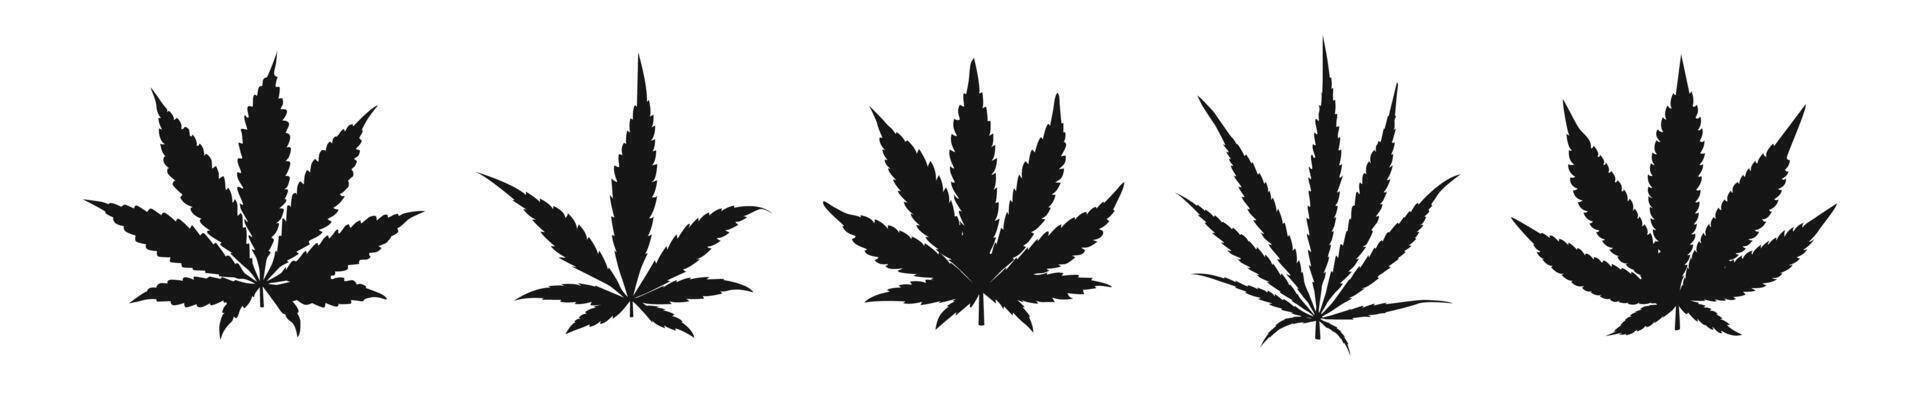 Marijuana vectors. Cannabis leaf icon set. Cannabis Leaves Illustration vector